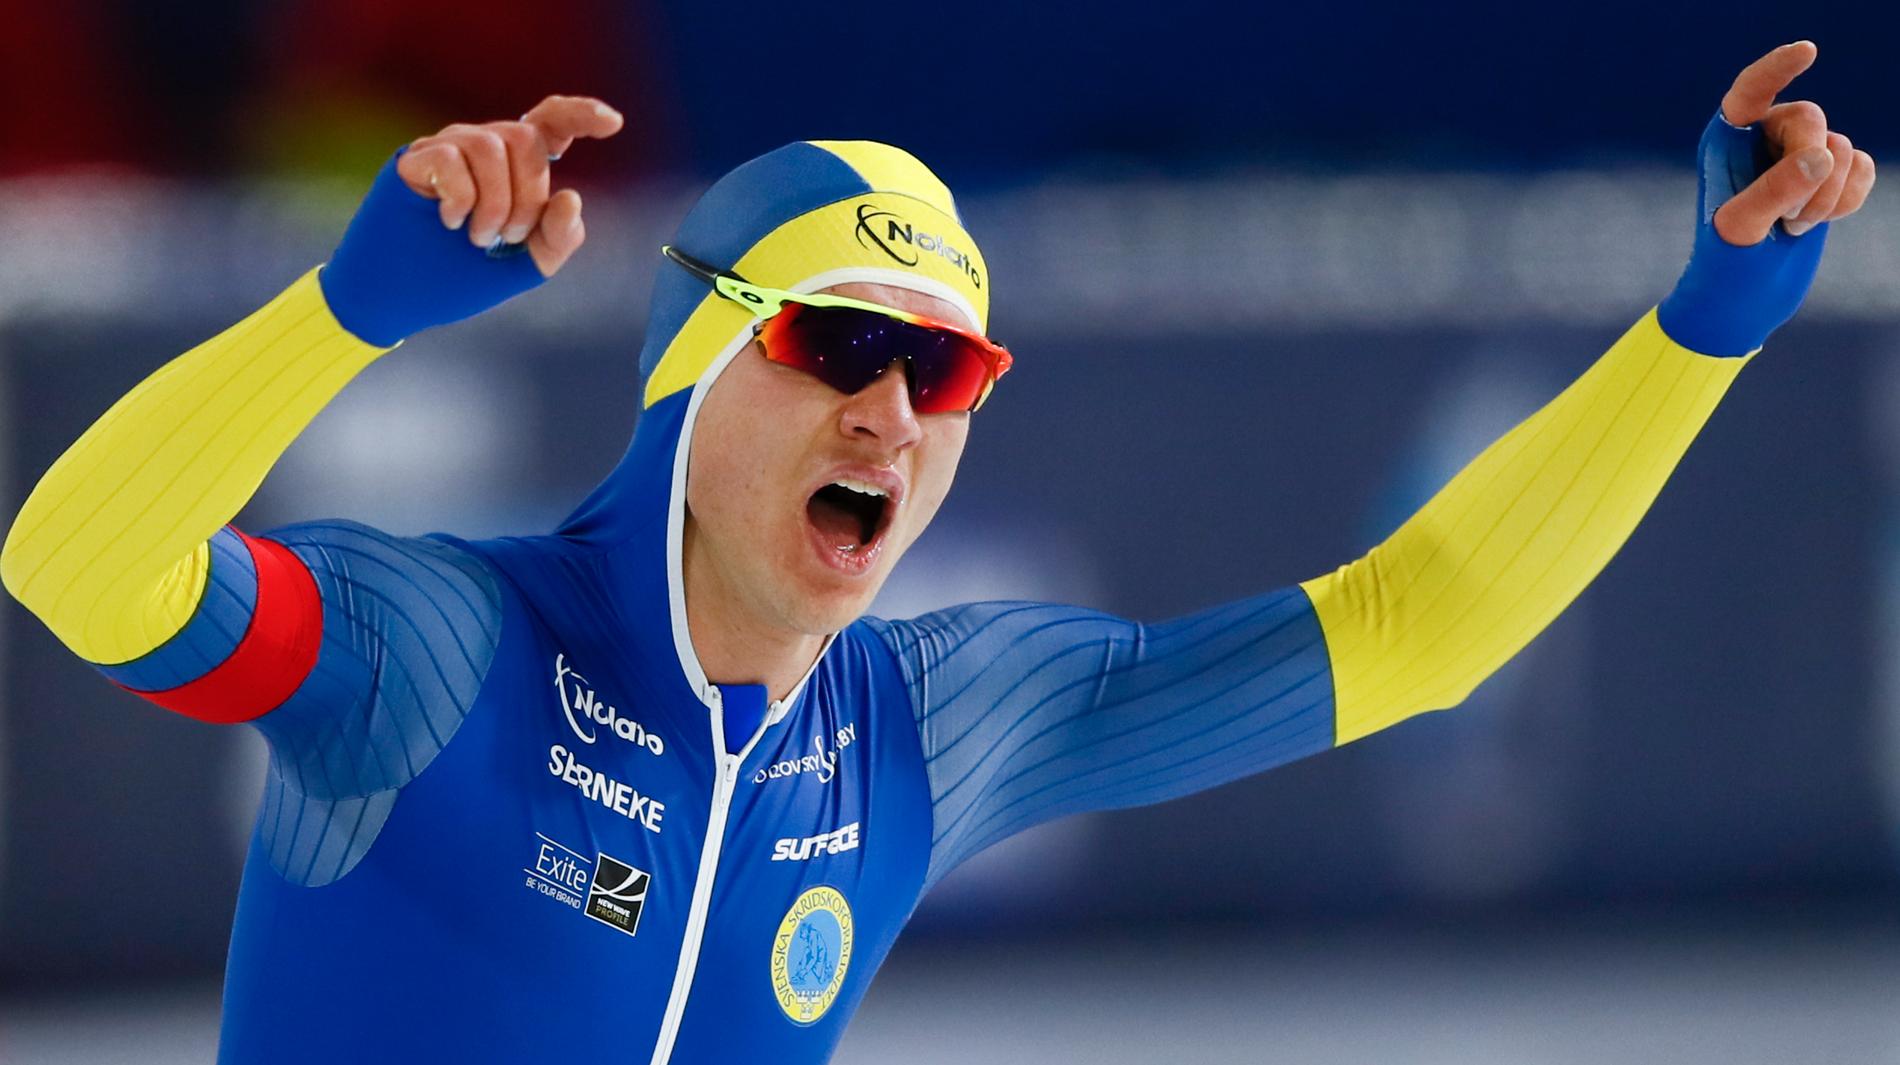 Sedan Nils van der Poel vann dubbla VM-guld på skridsko och slog världsrekord råder skridskofeber i Sverige. Nu hoppas förbundet kunna arrangera all-round VM. Arkivbild.